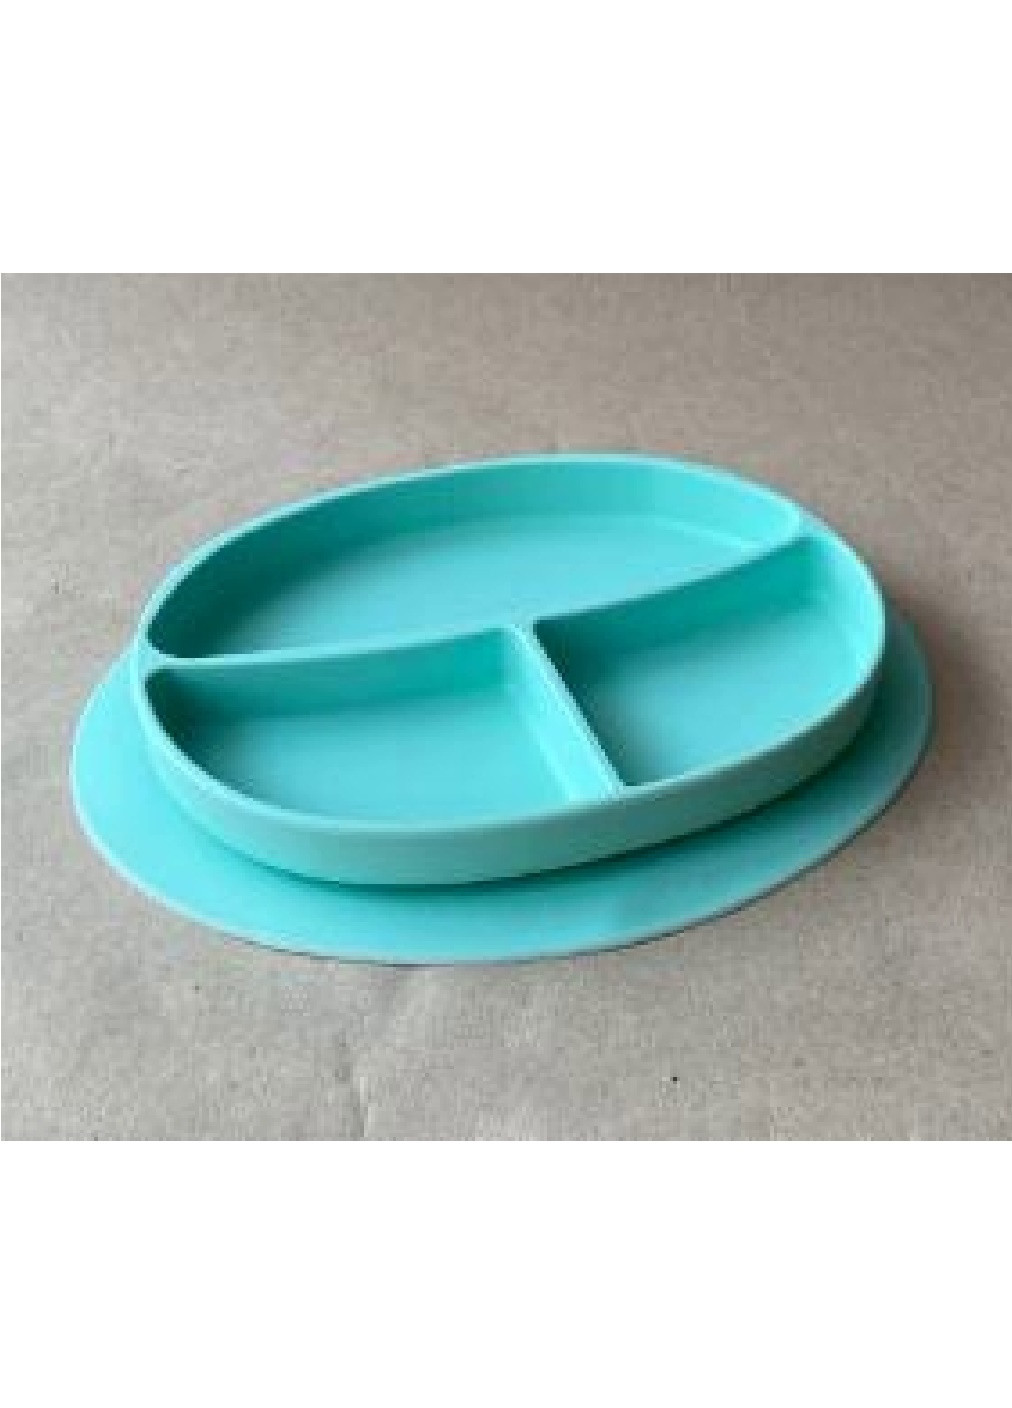 Детский силиконовый набор посуды для детей из пяти предметов (1427523-Т) Голубой Francesco Marconi (251406906)